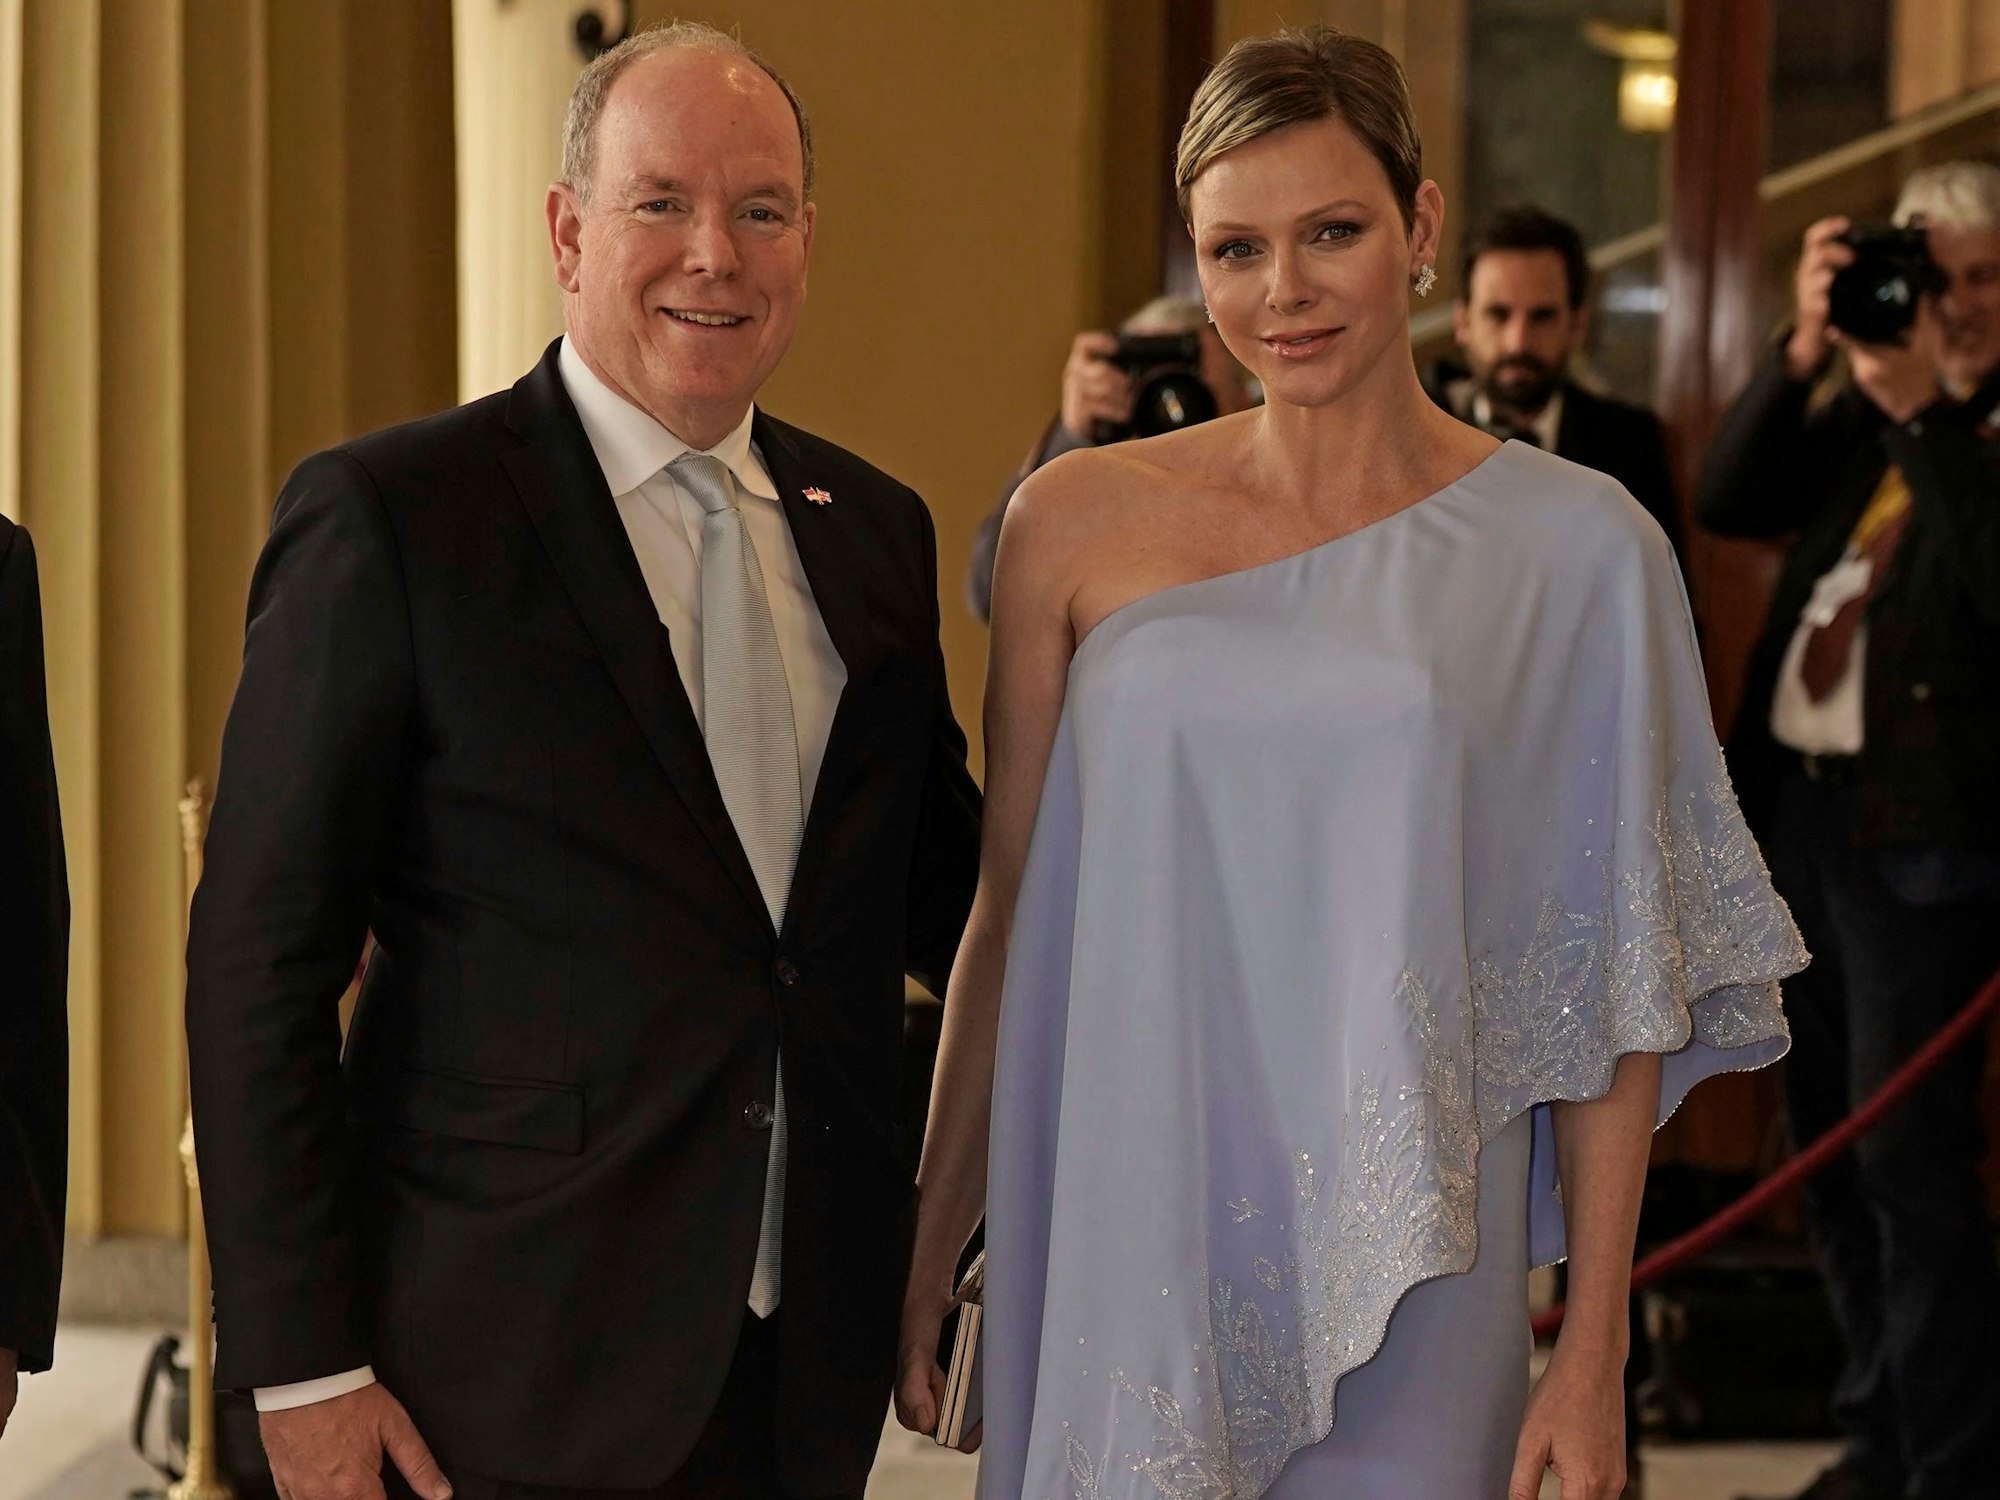 Fürst Albert II. und Fürstin Charlène von Monaco treffen am Freitag, dem 5. Mai 2023, im Buckingham Palace in London zu einem Empfang ein, den König Charles III. für die ausländischen Gäste gibt, die an seiner für den 6. Mai geplanten Krönung teilnehmen.